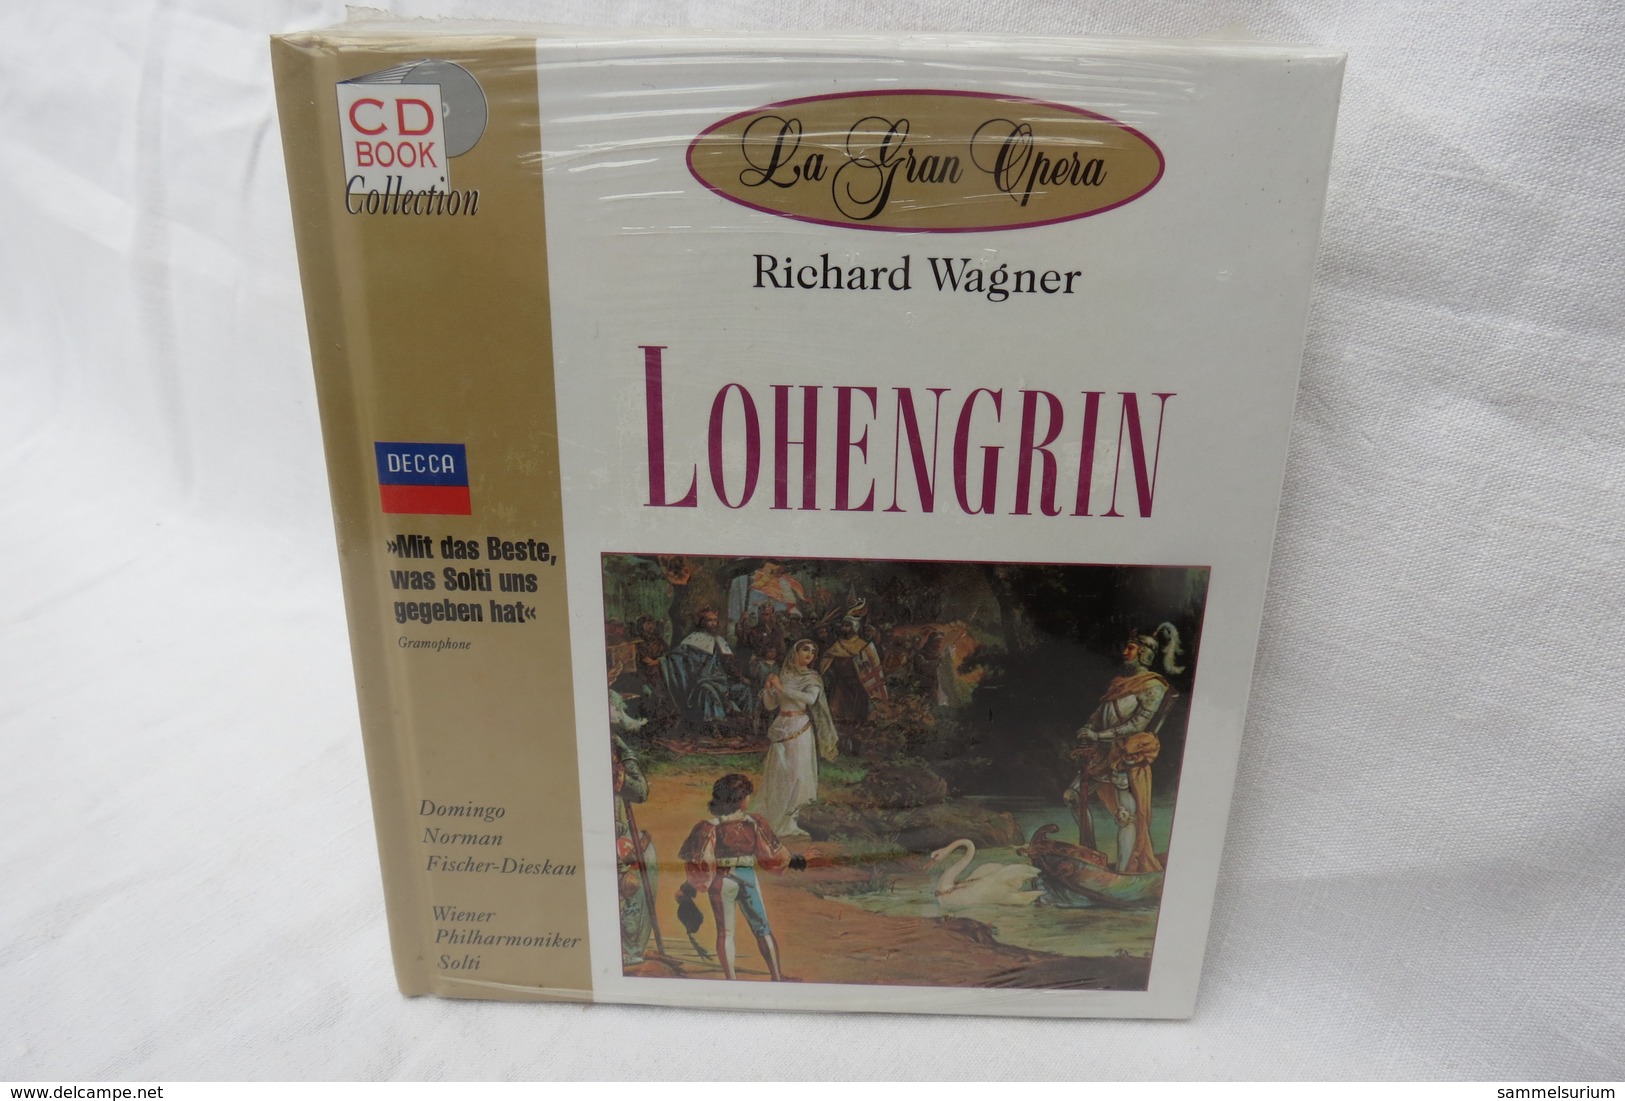 CD "Lohengrin / Richard Wagner" Mit Buch Aus Der CD Book Collection (ungeöffnet, Original Eingeschweißt) - Oper & Operette